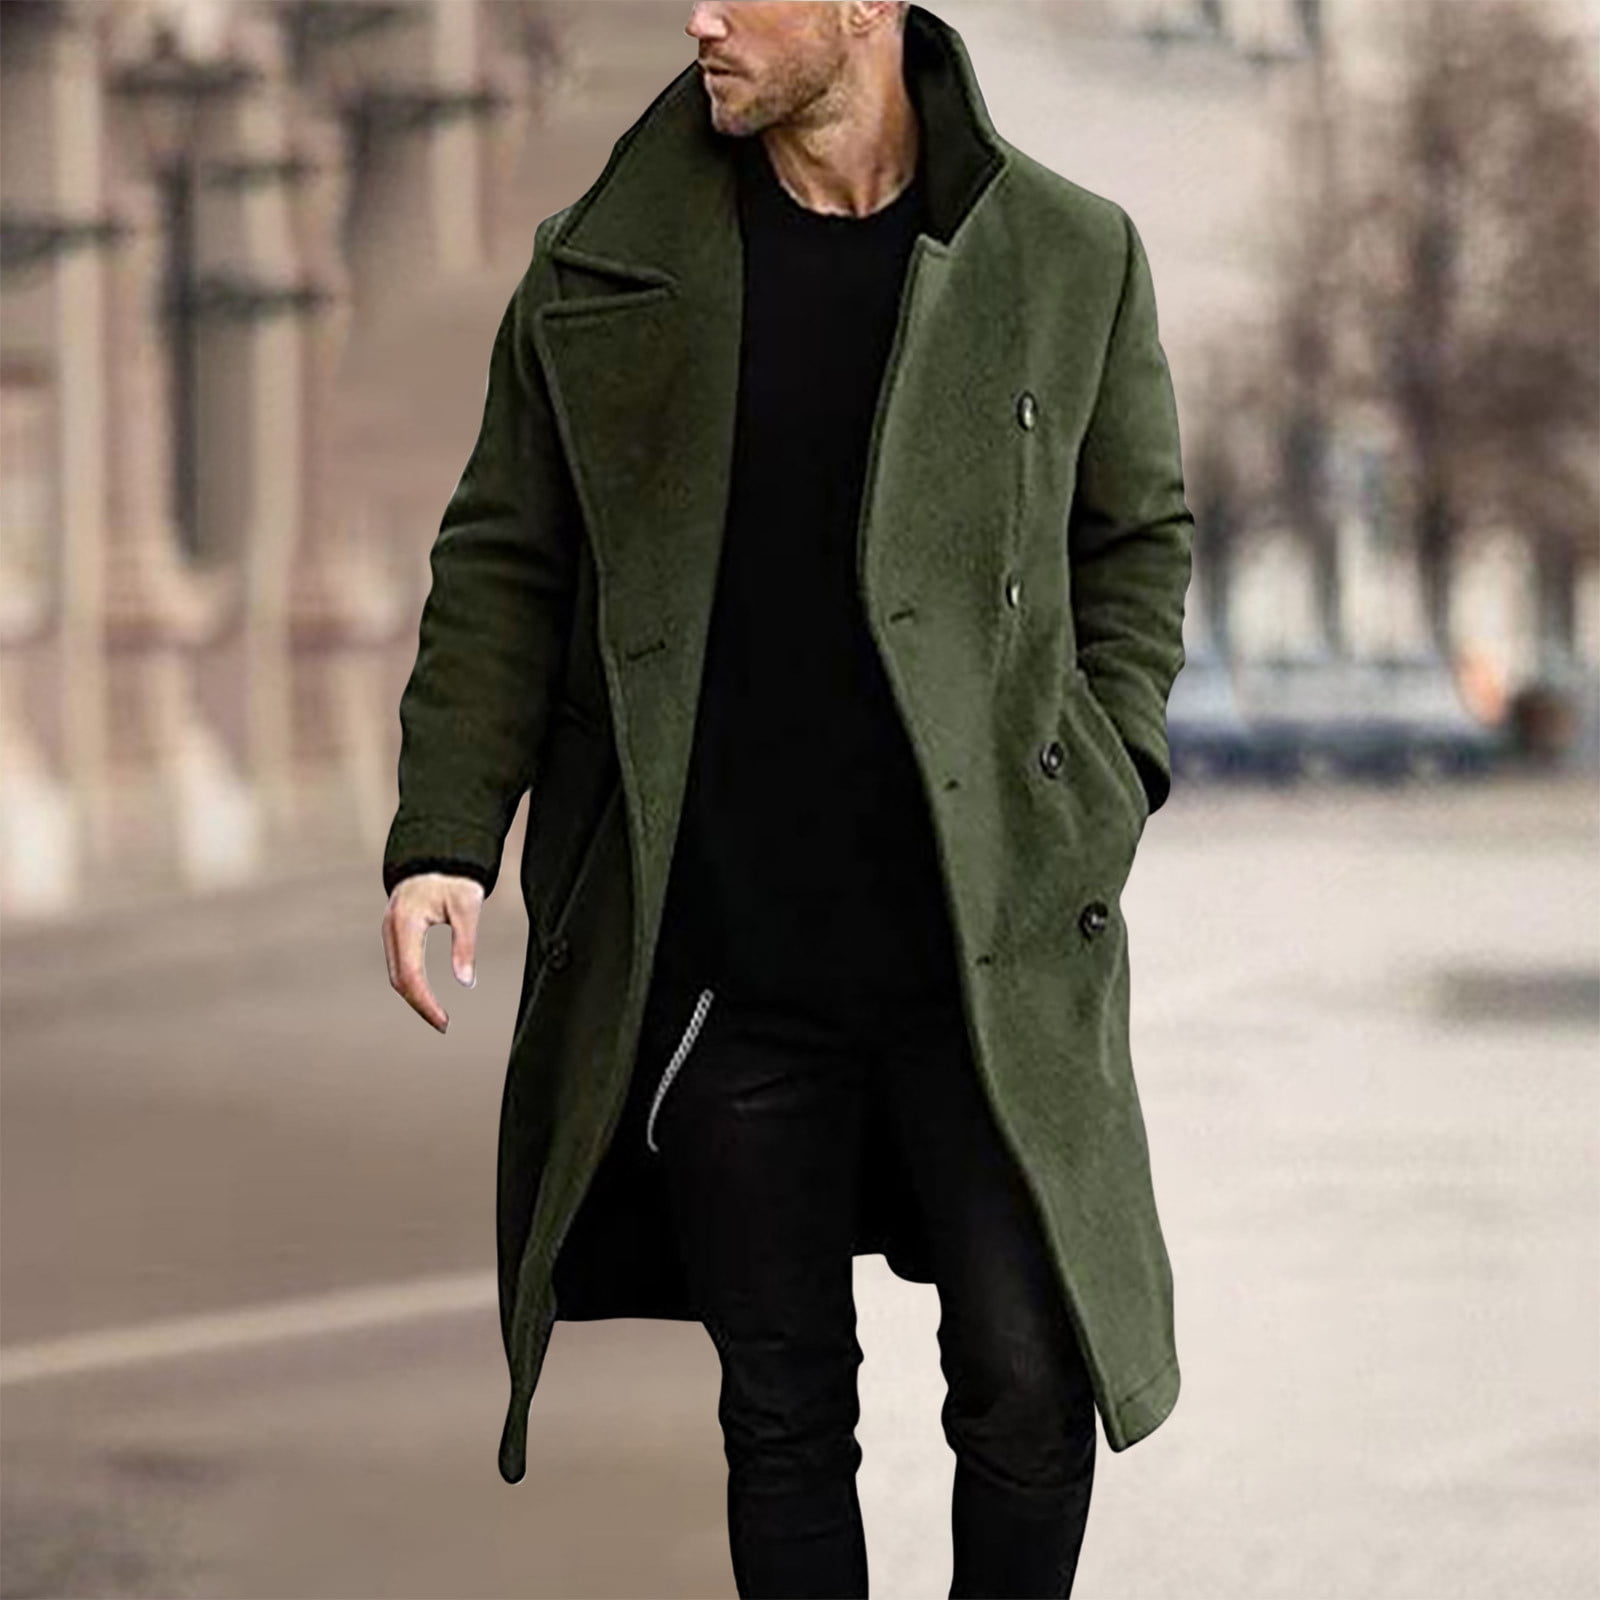 Man OverCoat Green, Winter Trench Coat